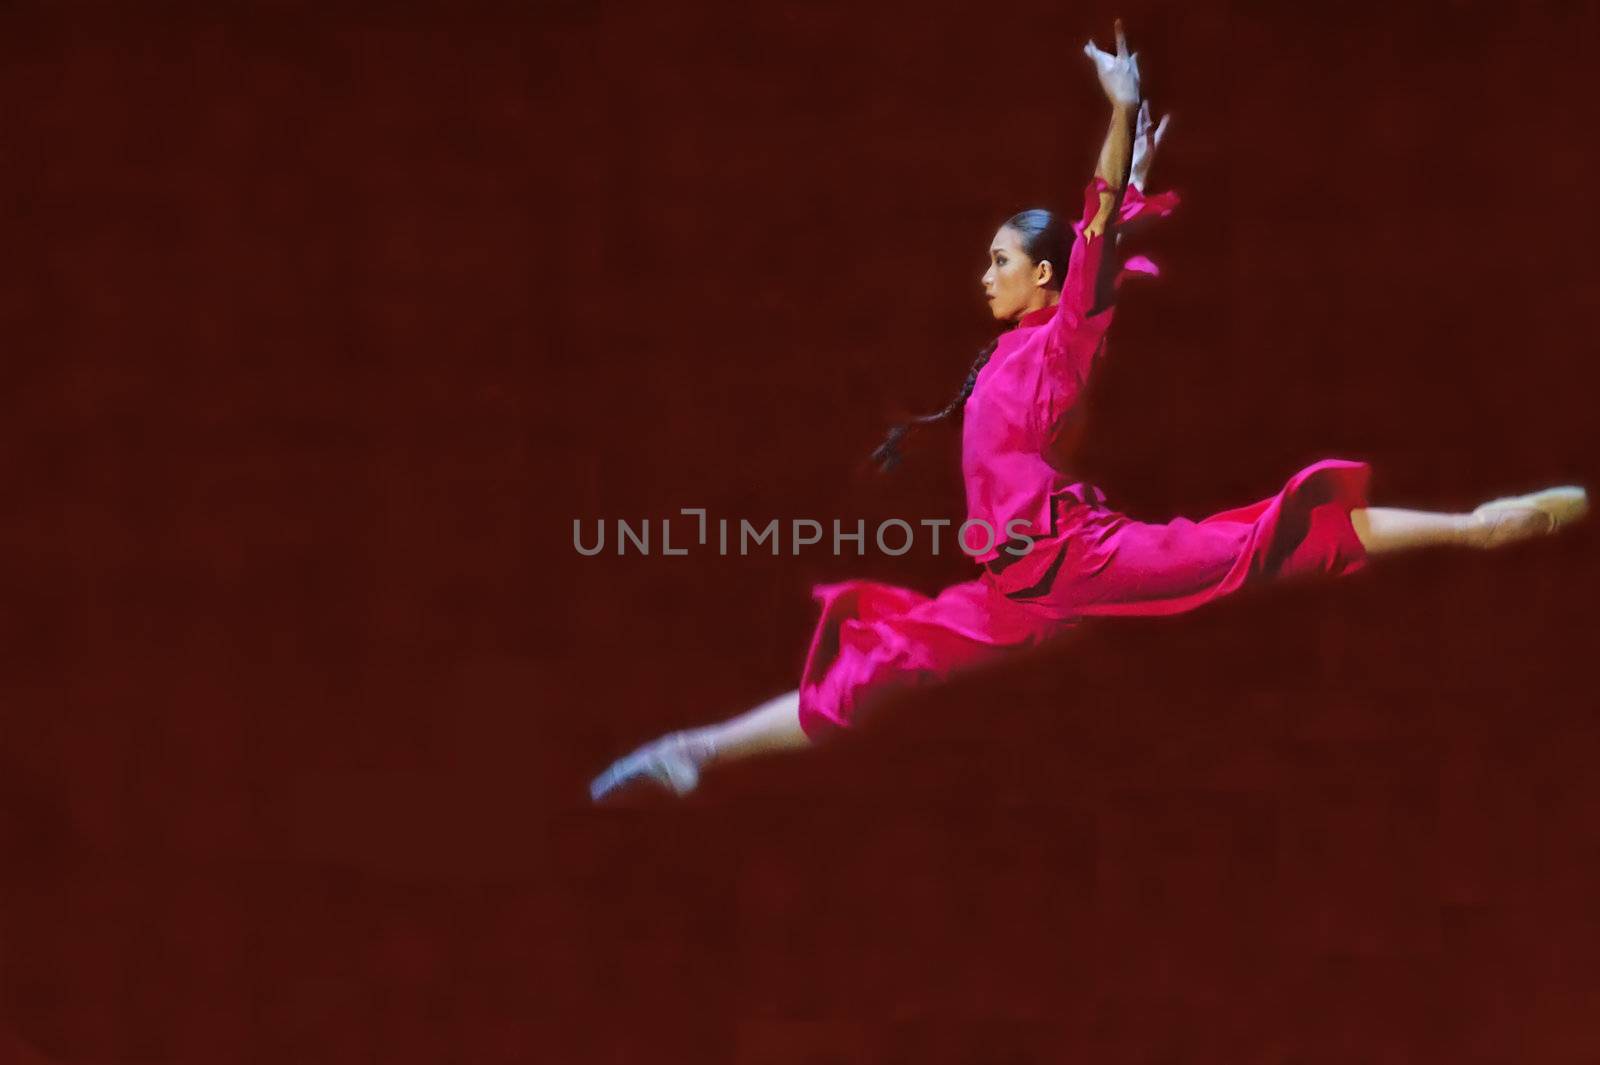 Jumping ballerina by jackq